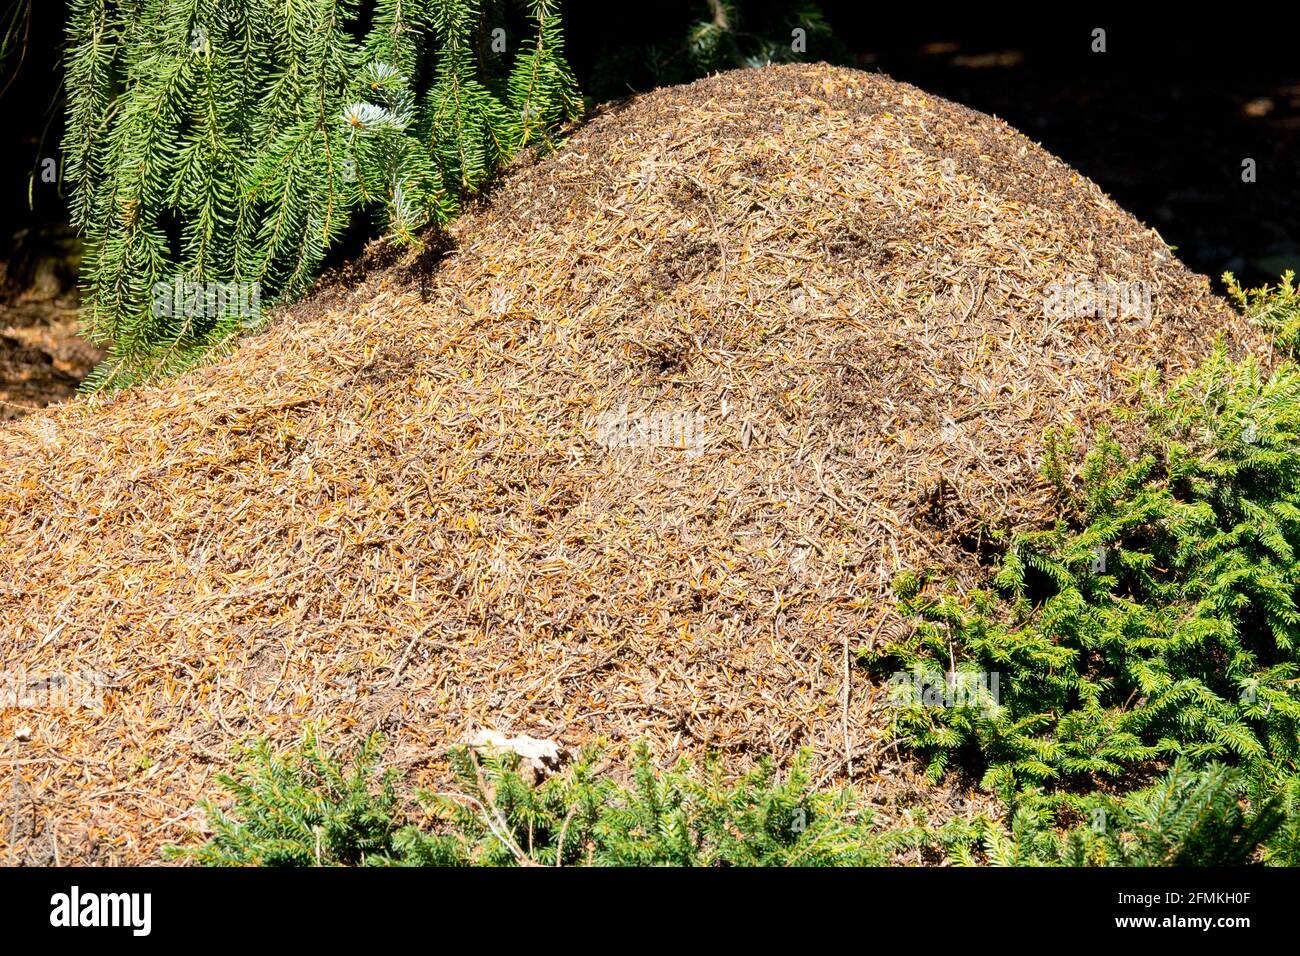 Nid de fourmis de bois (Formica rufa) dans un nid de fourmis de forêt tchèque Banque D'Images